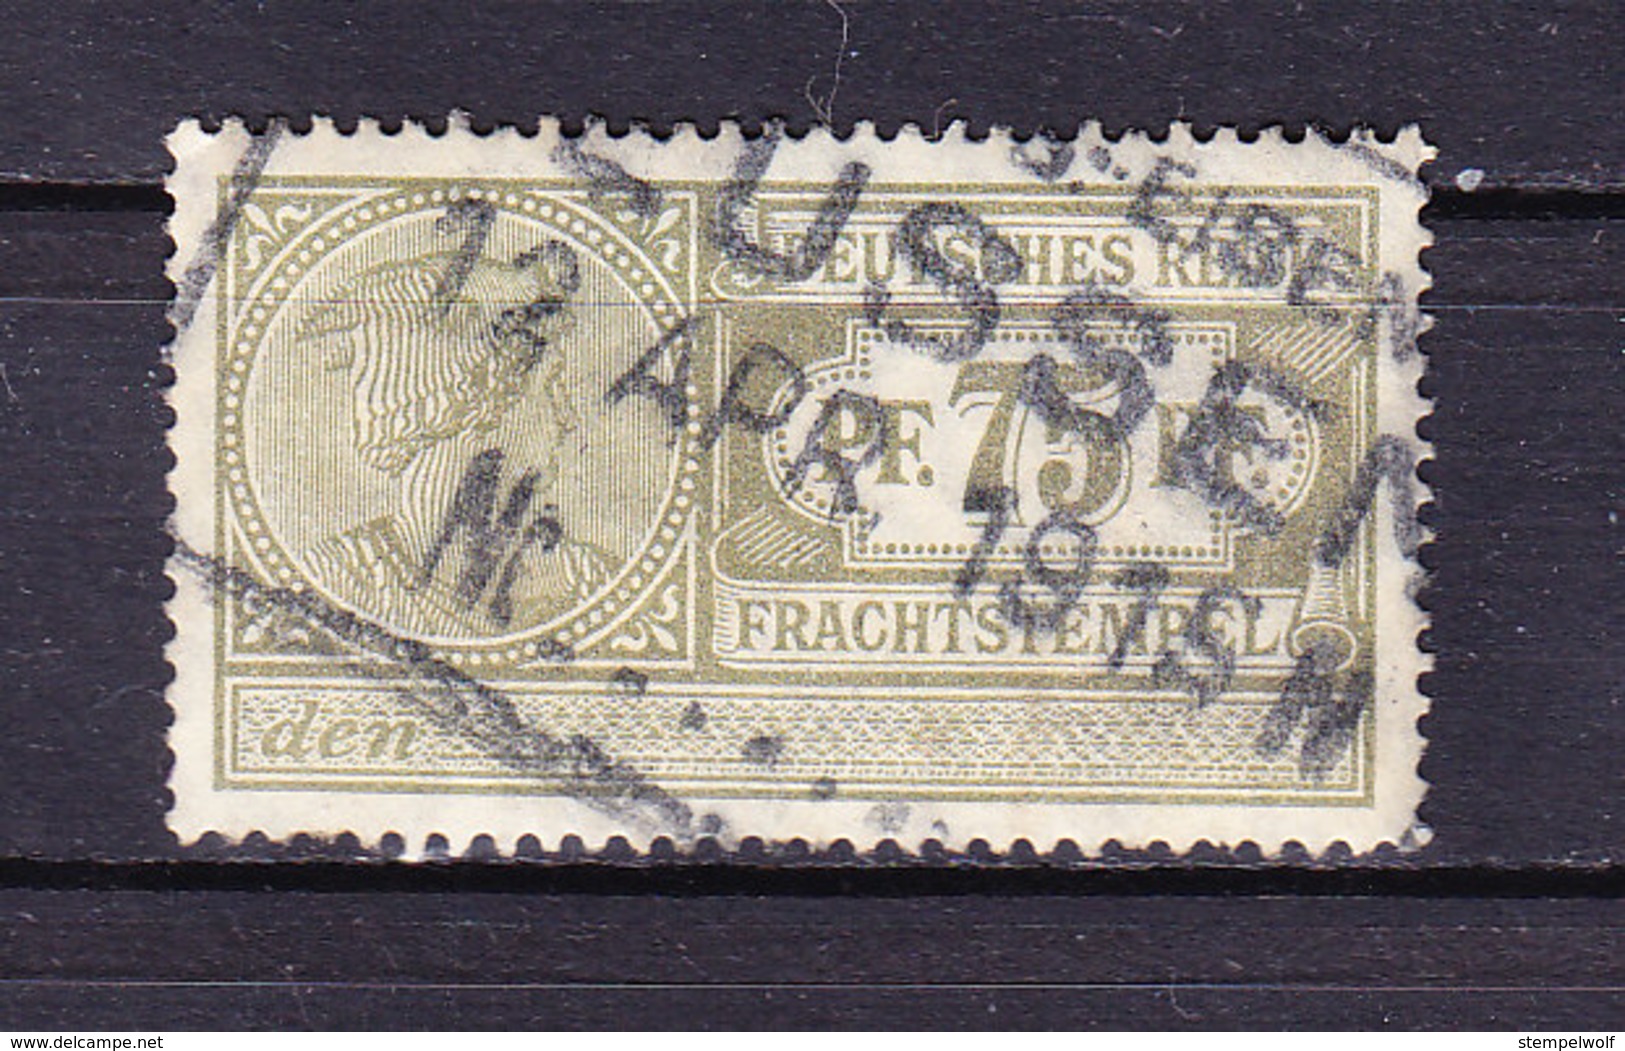 Deutsches Reich, Frachtstempel, 75 Pfg (48237) - Gebührenstempel, Impoststempel